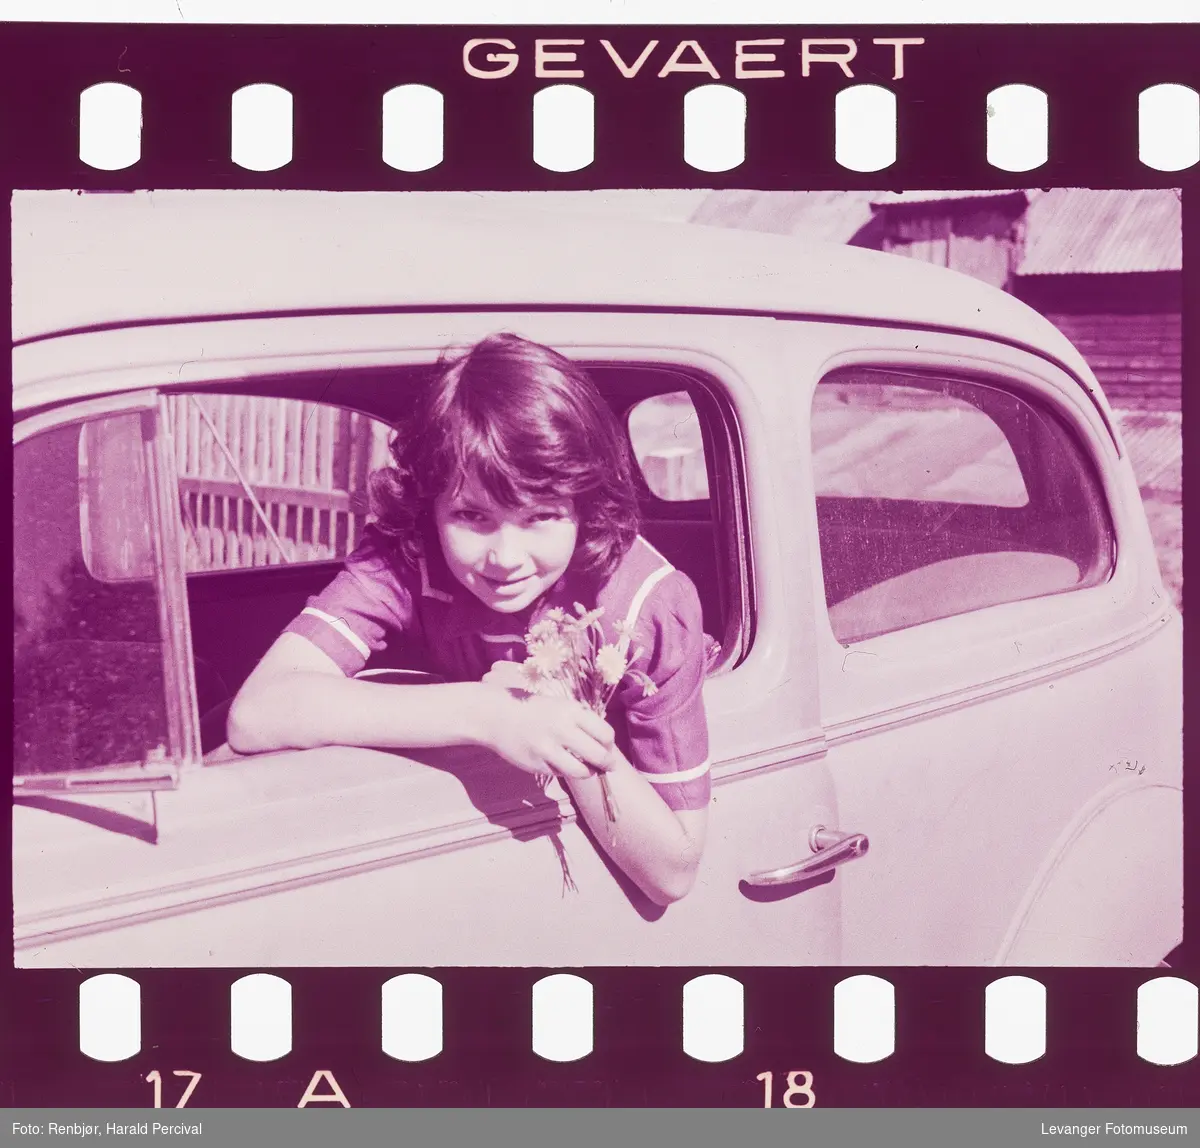 Testbilde av Gevaertfilm, jente i en bil.